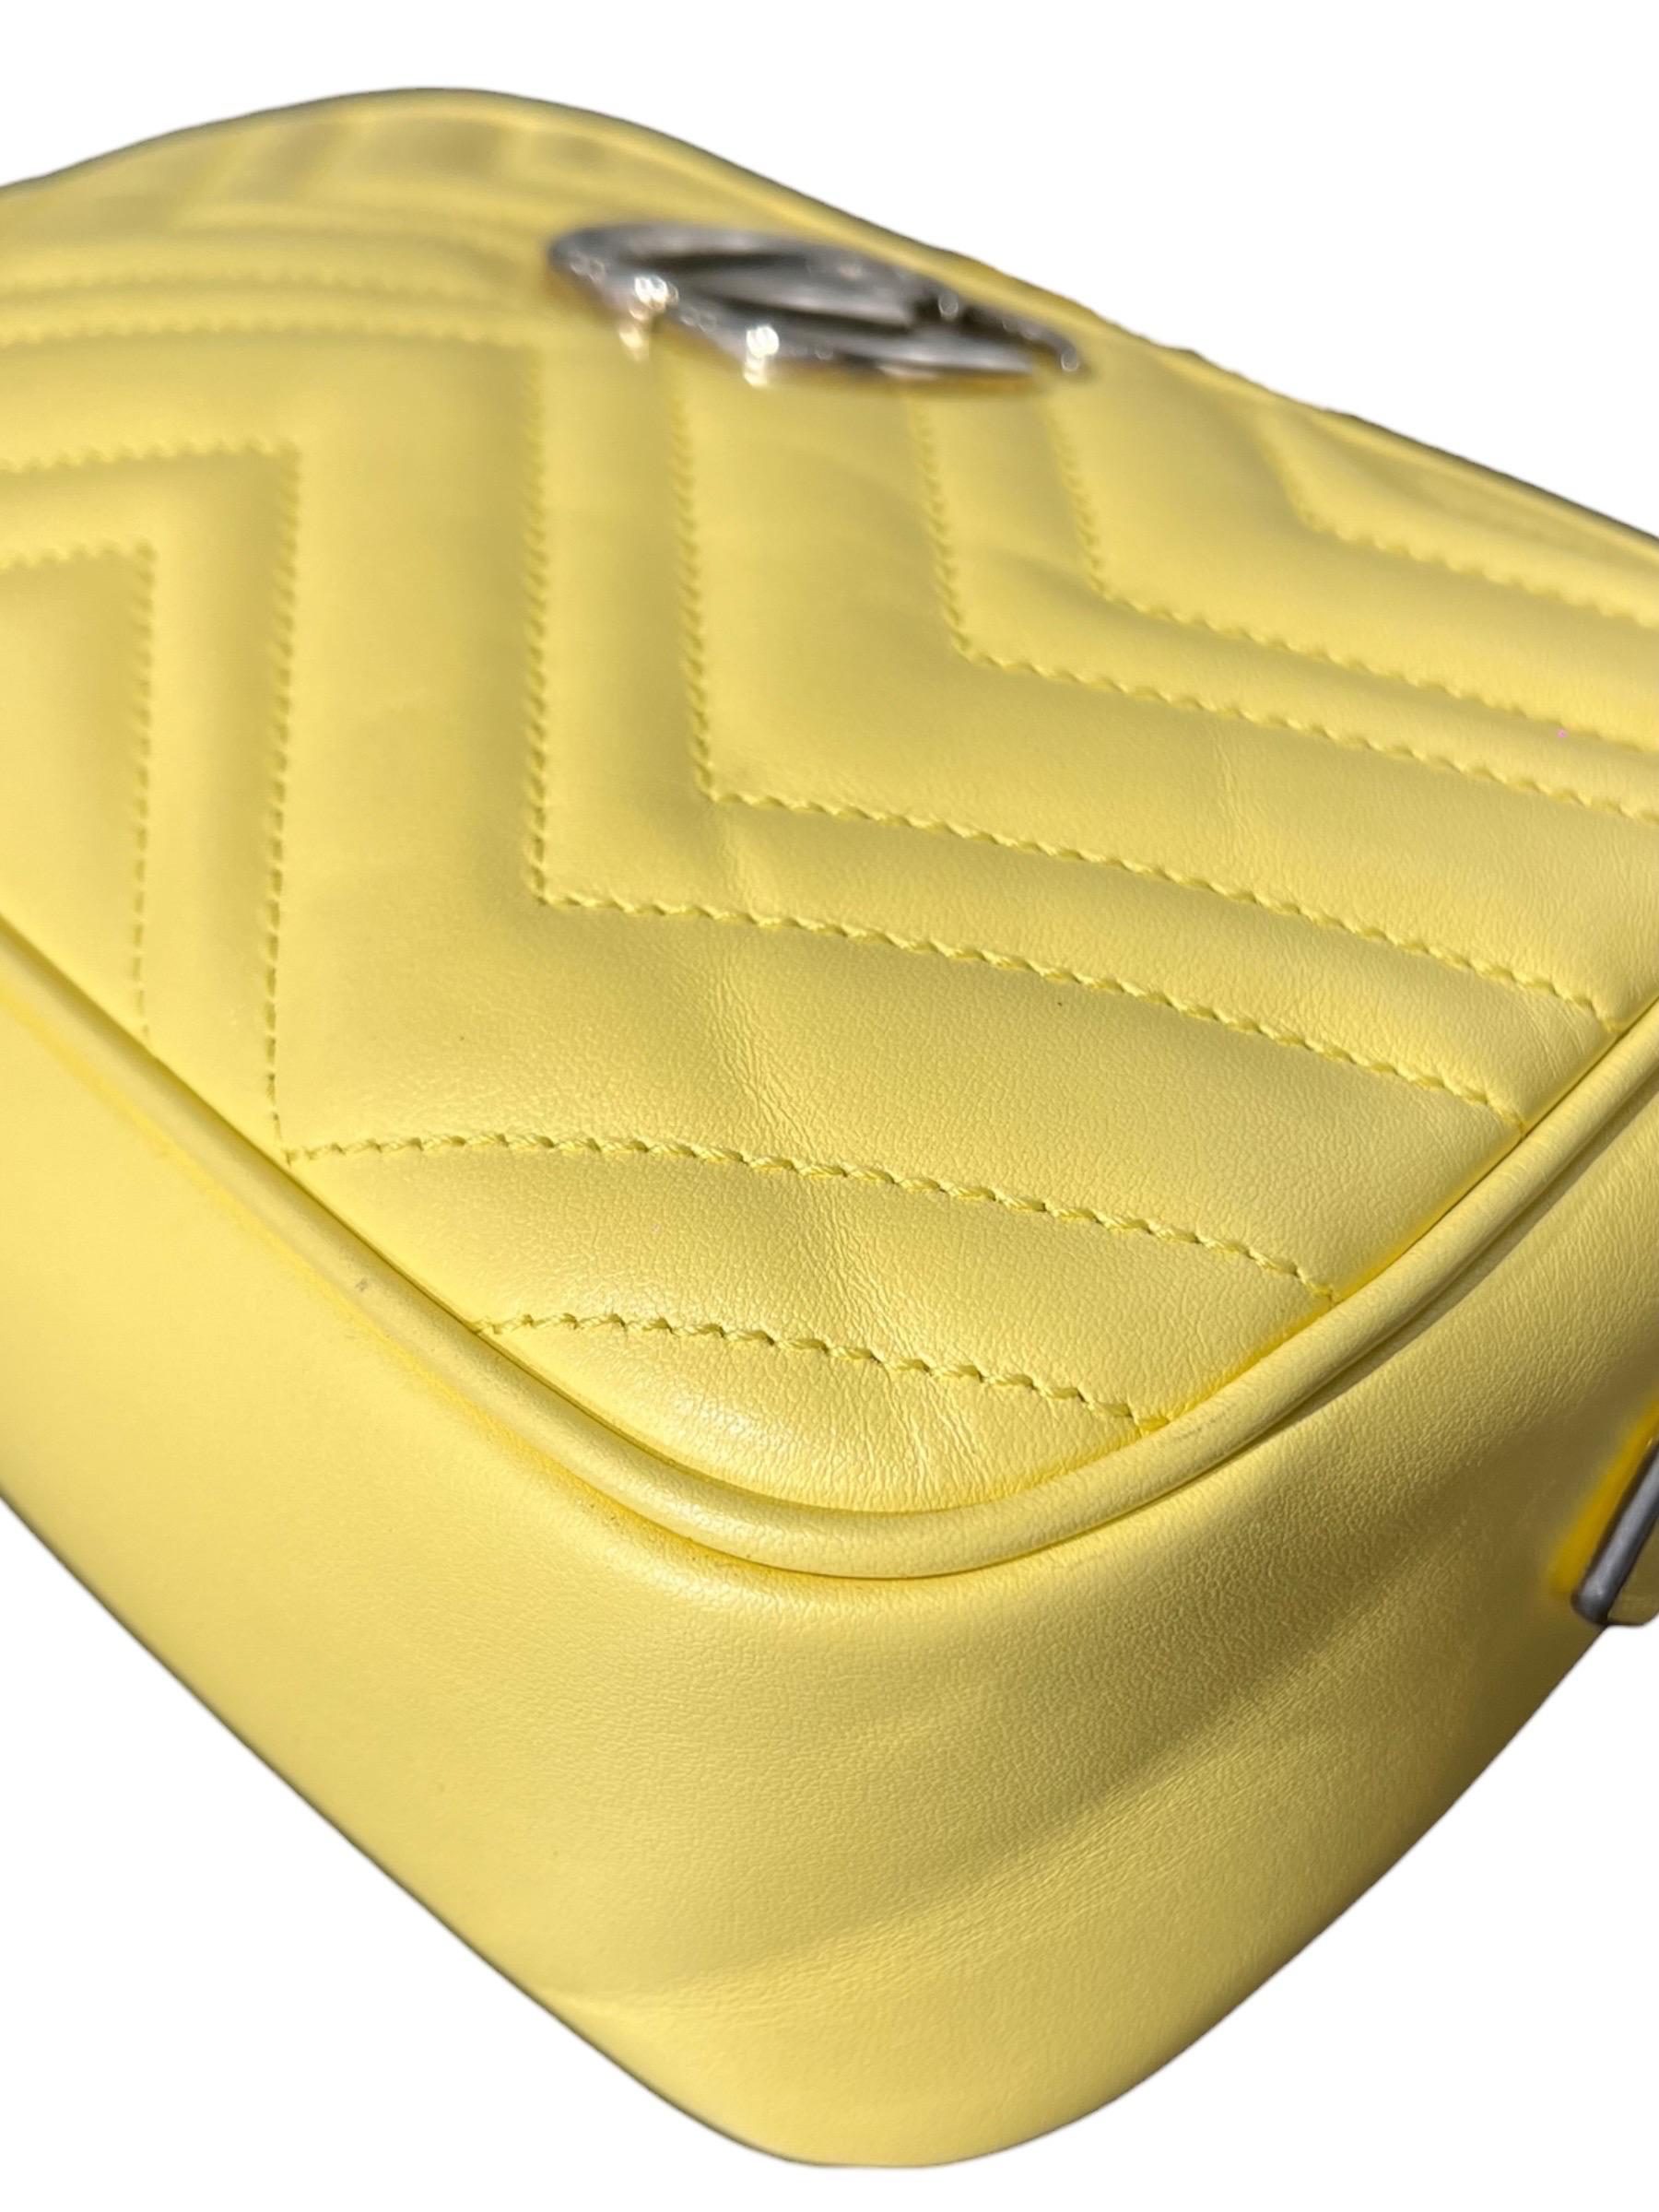 Borsa a Tracolla Gucci Camera Bag Marmont Giallo Pastel For Sale 4